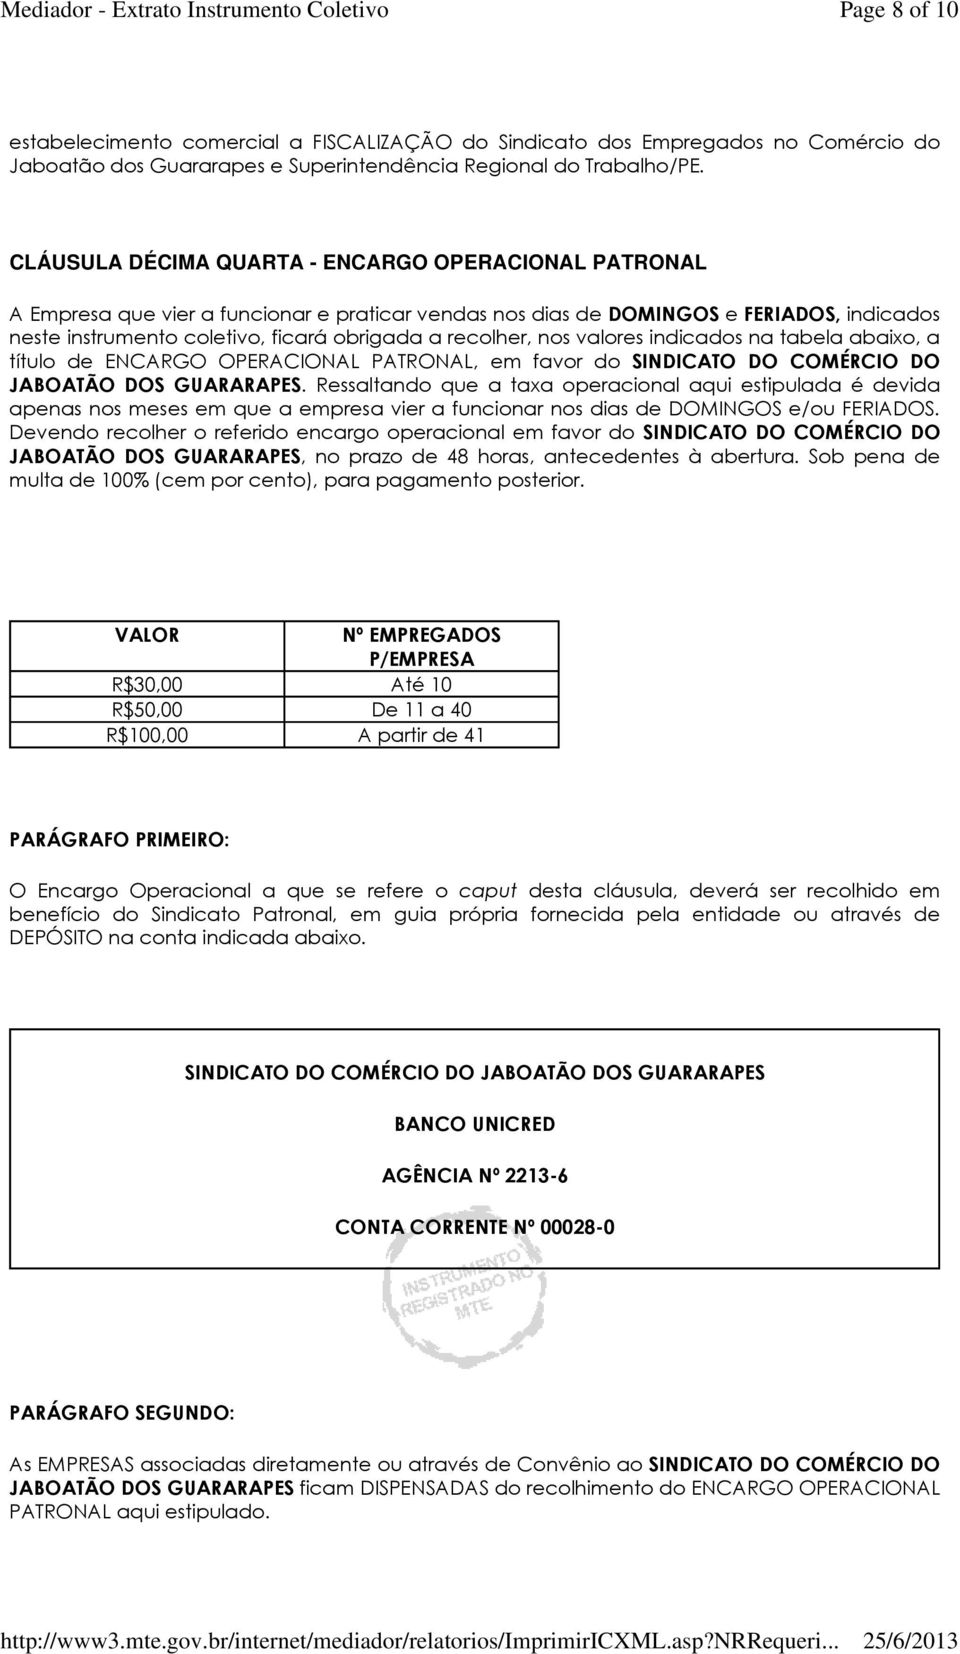 recolher, nos valores indicados na tabela abaixo, a título de ENCARGO OPERACIONAL PATRONAL, em favor do SINDICATO DO COMÉRCIO DO JABOATÃO DOS GUARARAPES.